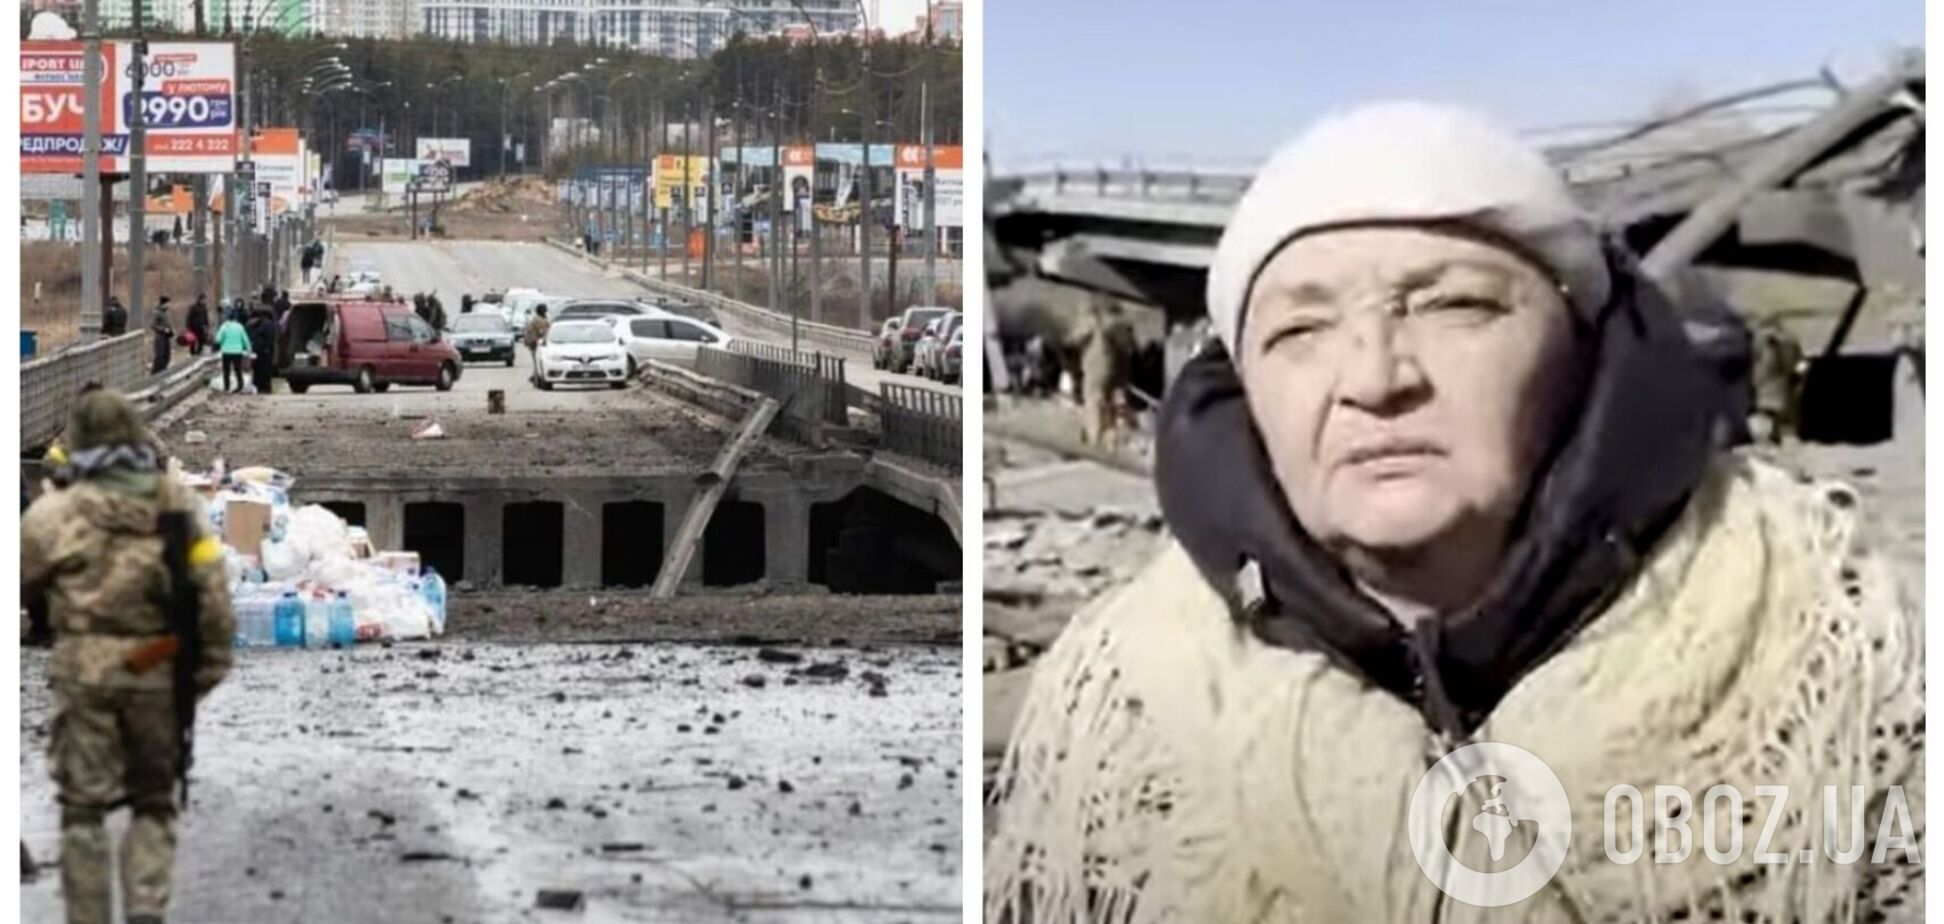 'Таких сволот я ще в житті не бачила': росіянка з Гостомеля висловилася про окупантів. Відео